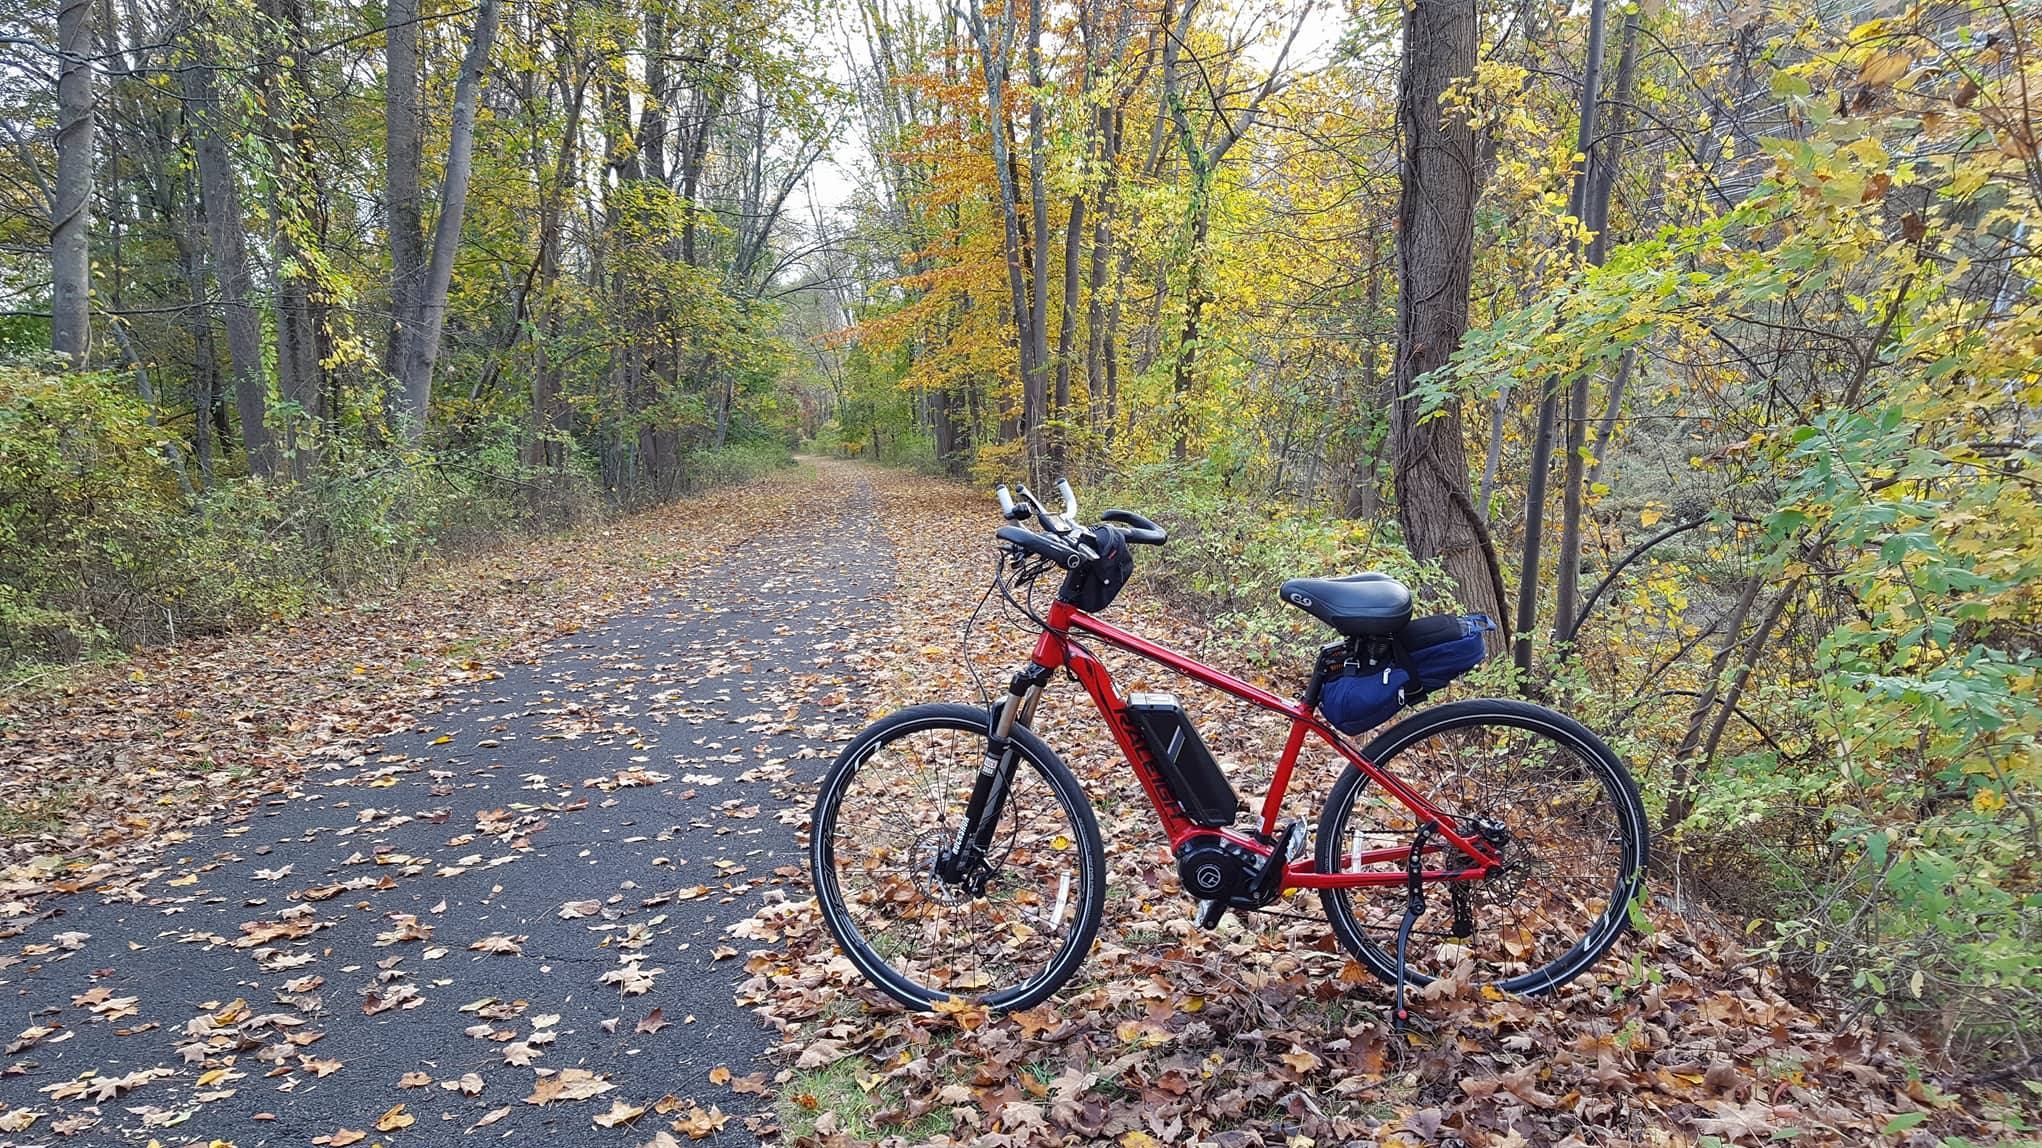 Bike trail in the fall season.jpg